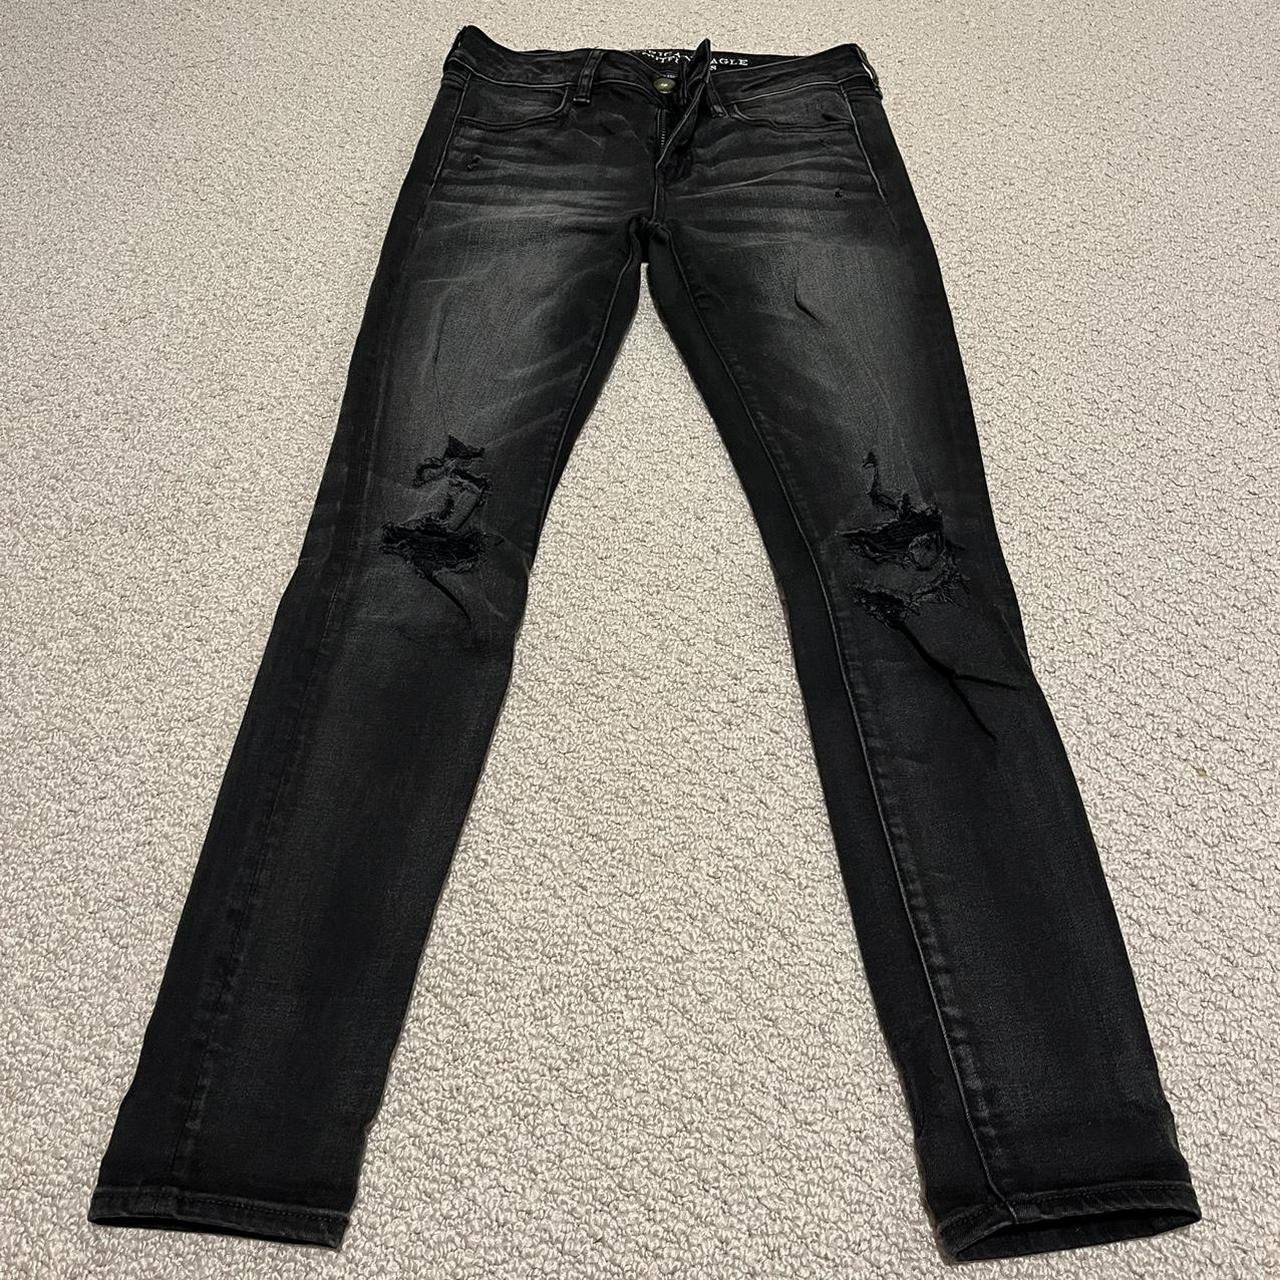 AE super stretch black jeans size 4 - Depop